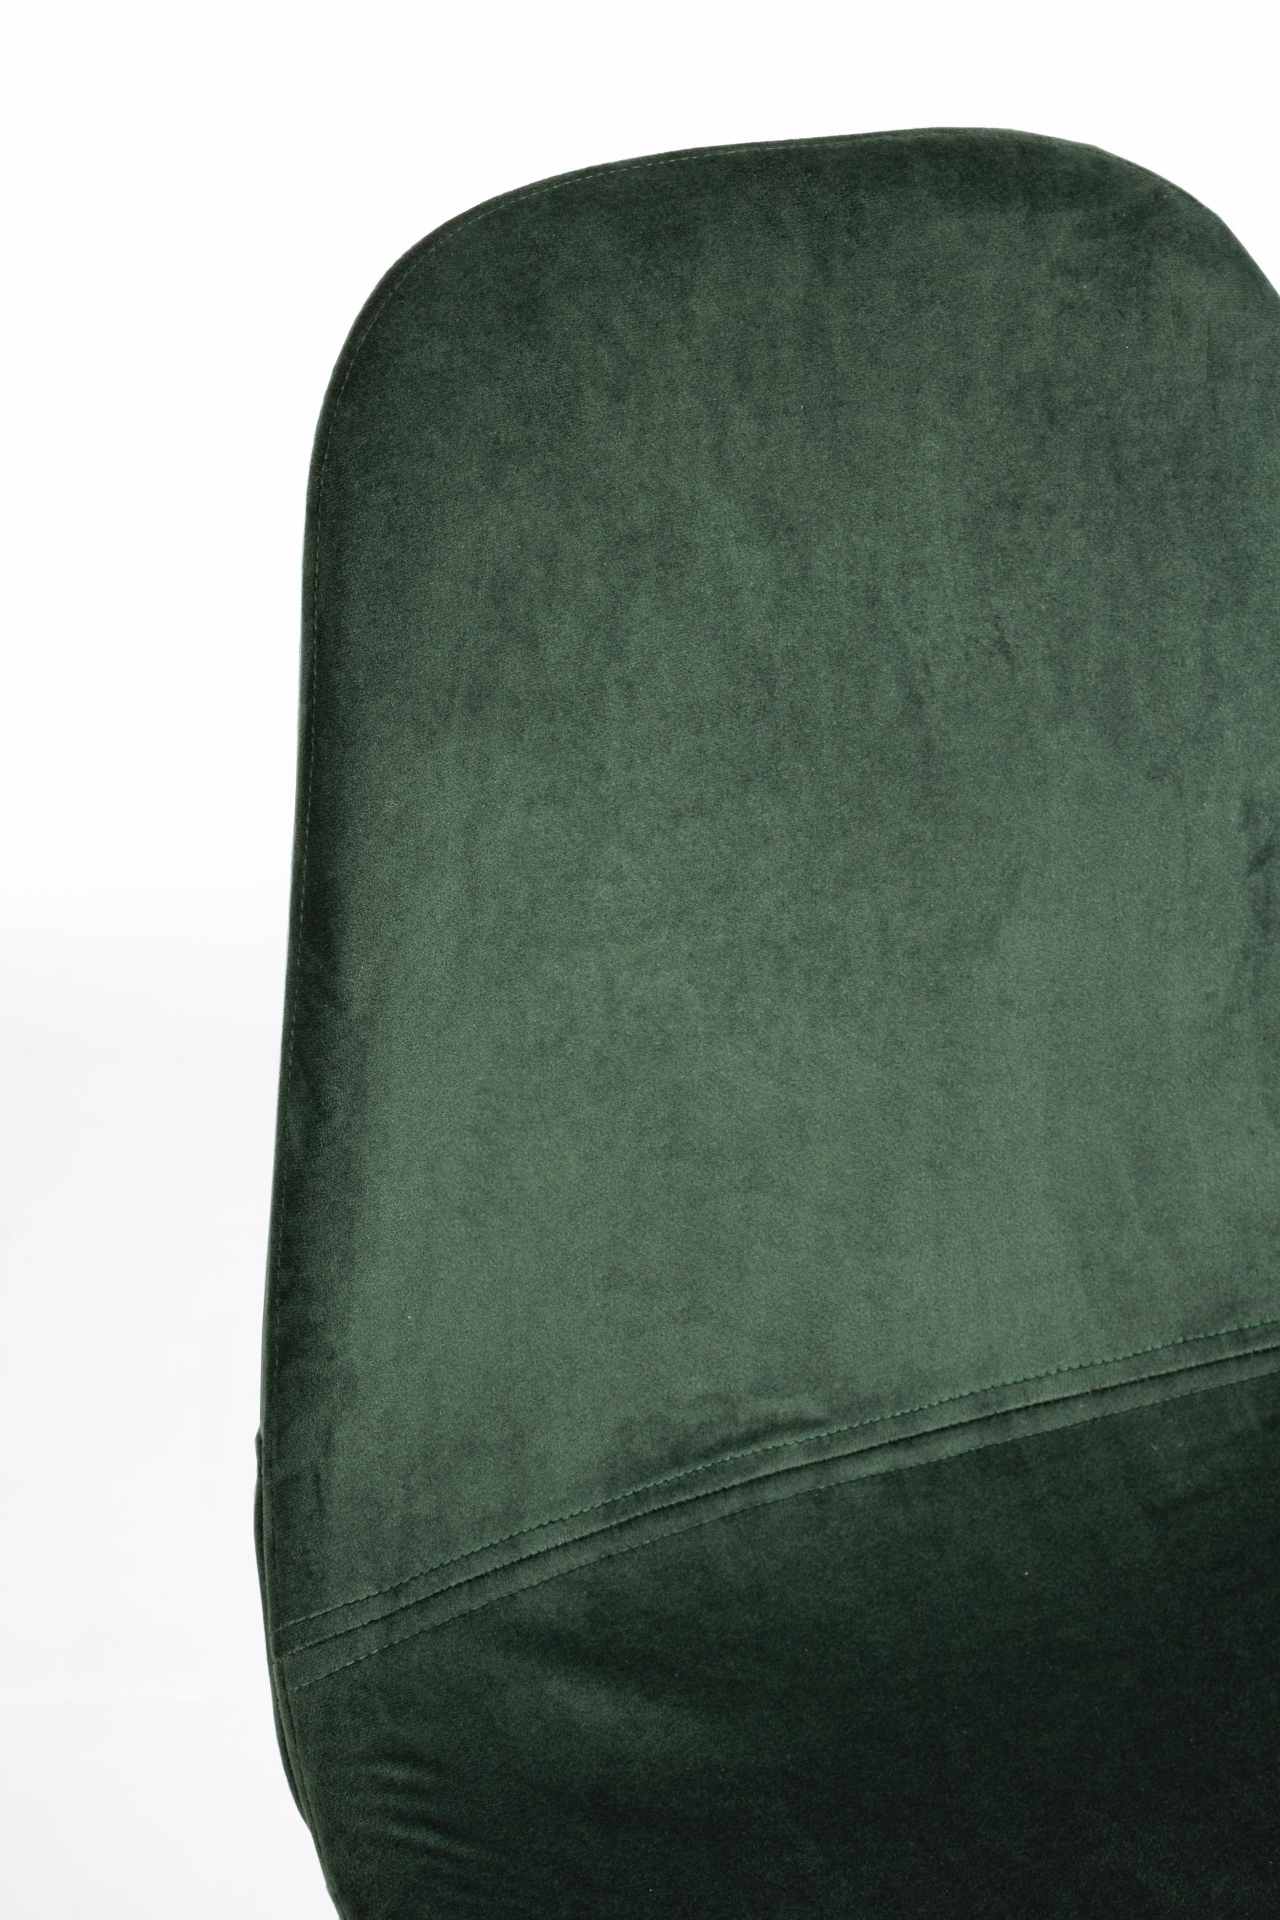 Der Esszimmerstuhl Irelia überzeugt mit seinem modernem Design. Gefertigt wurde der Stuhl aus einem Samt-Bezug, welcher einen dunkelgrünen Farbton besitzt. Das Gestell ist aus Metall und ist schwarz. Die Sitzhöhe beträgt 47 cm.